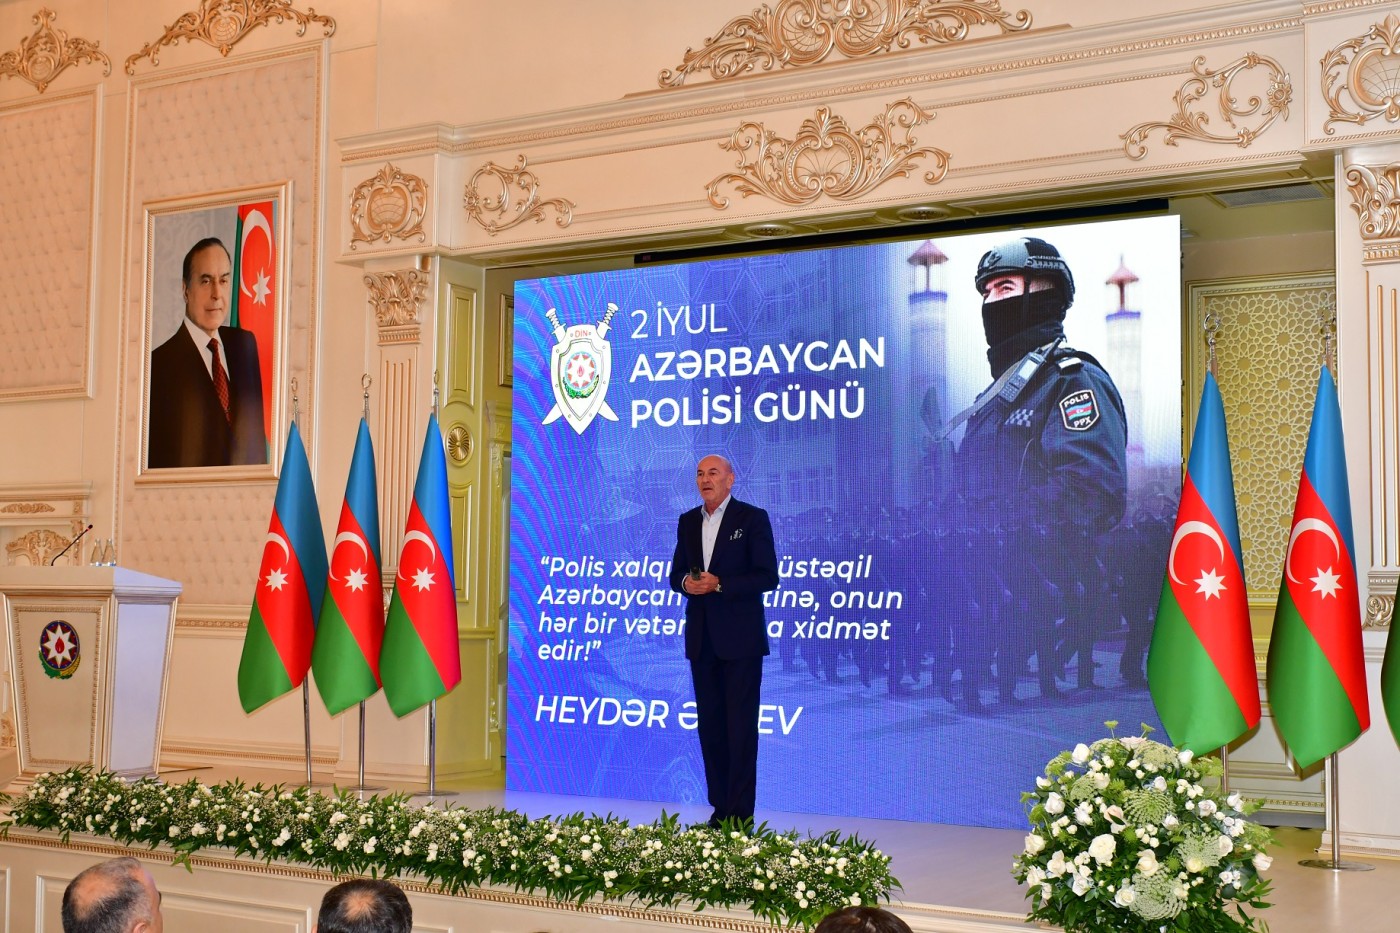 Abşeronda da “2 iyul - Azərbaycan Polisi Günü” qeyd edilib - FOTOLAR